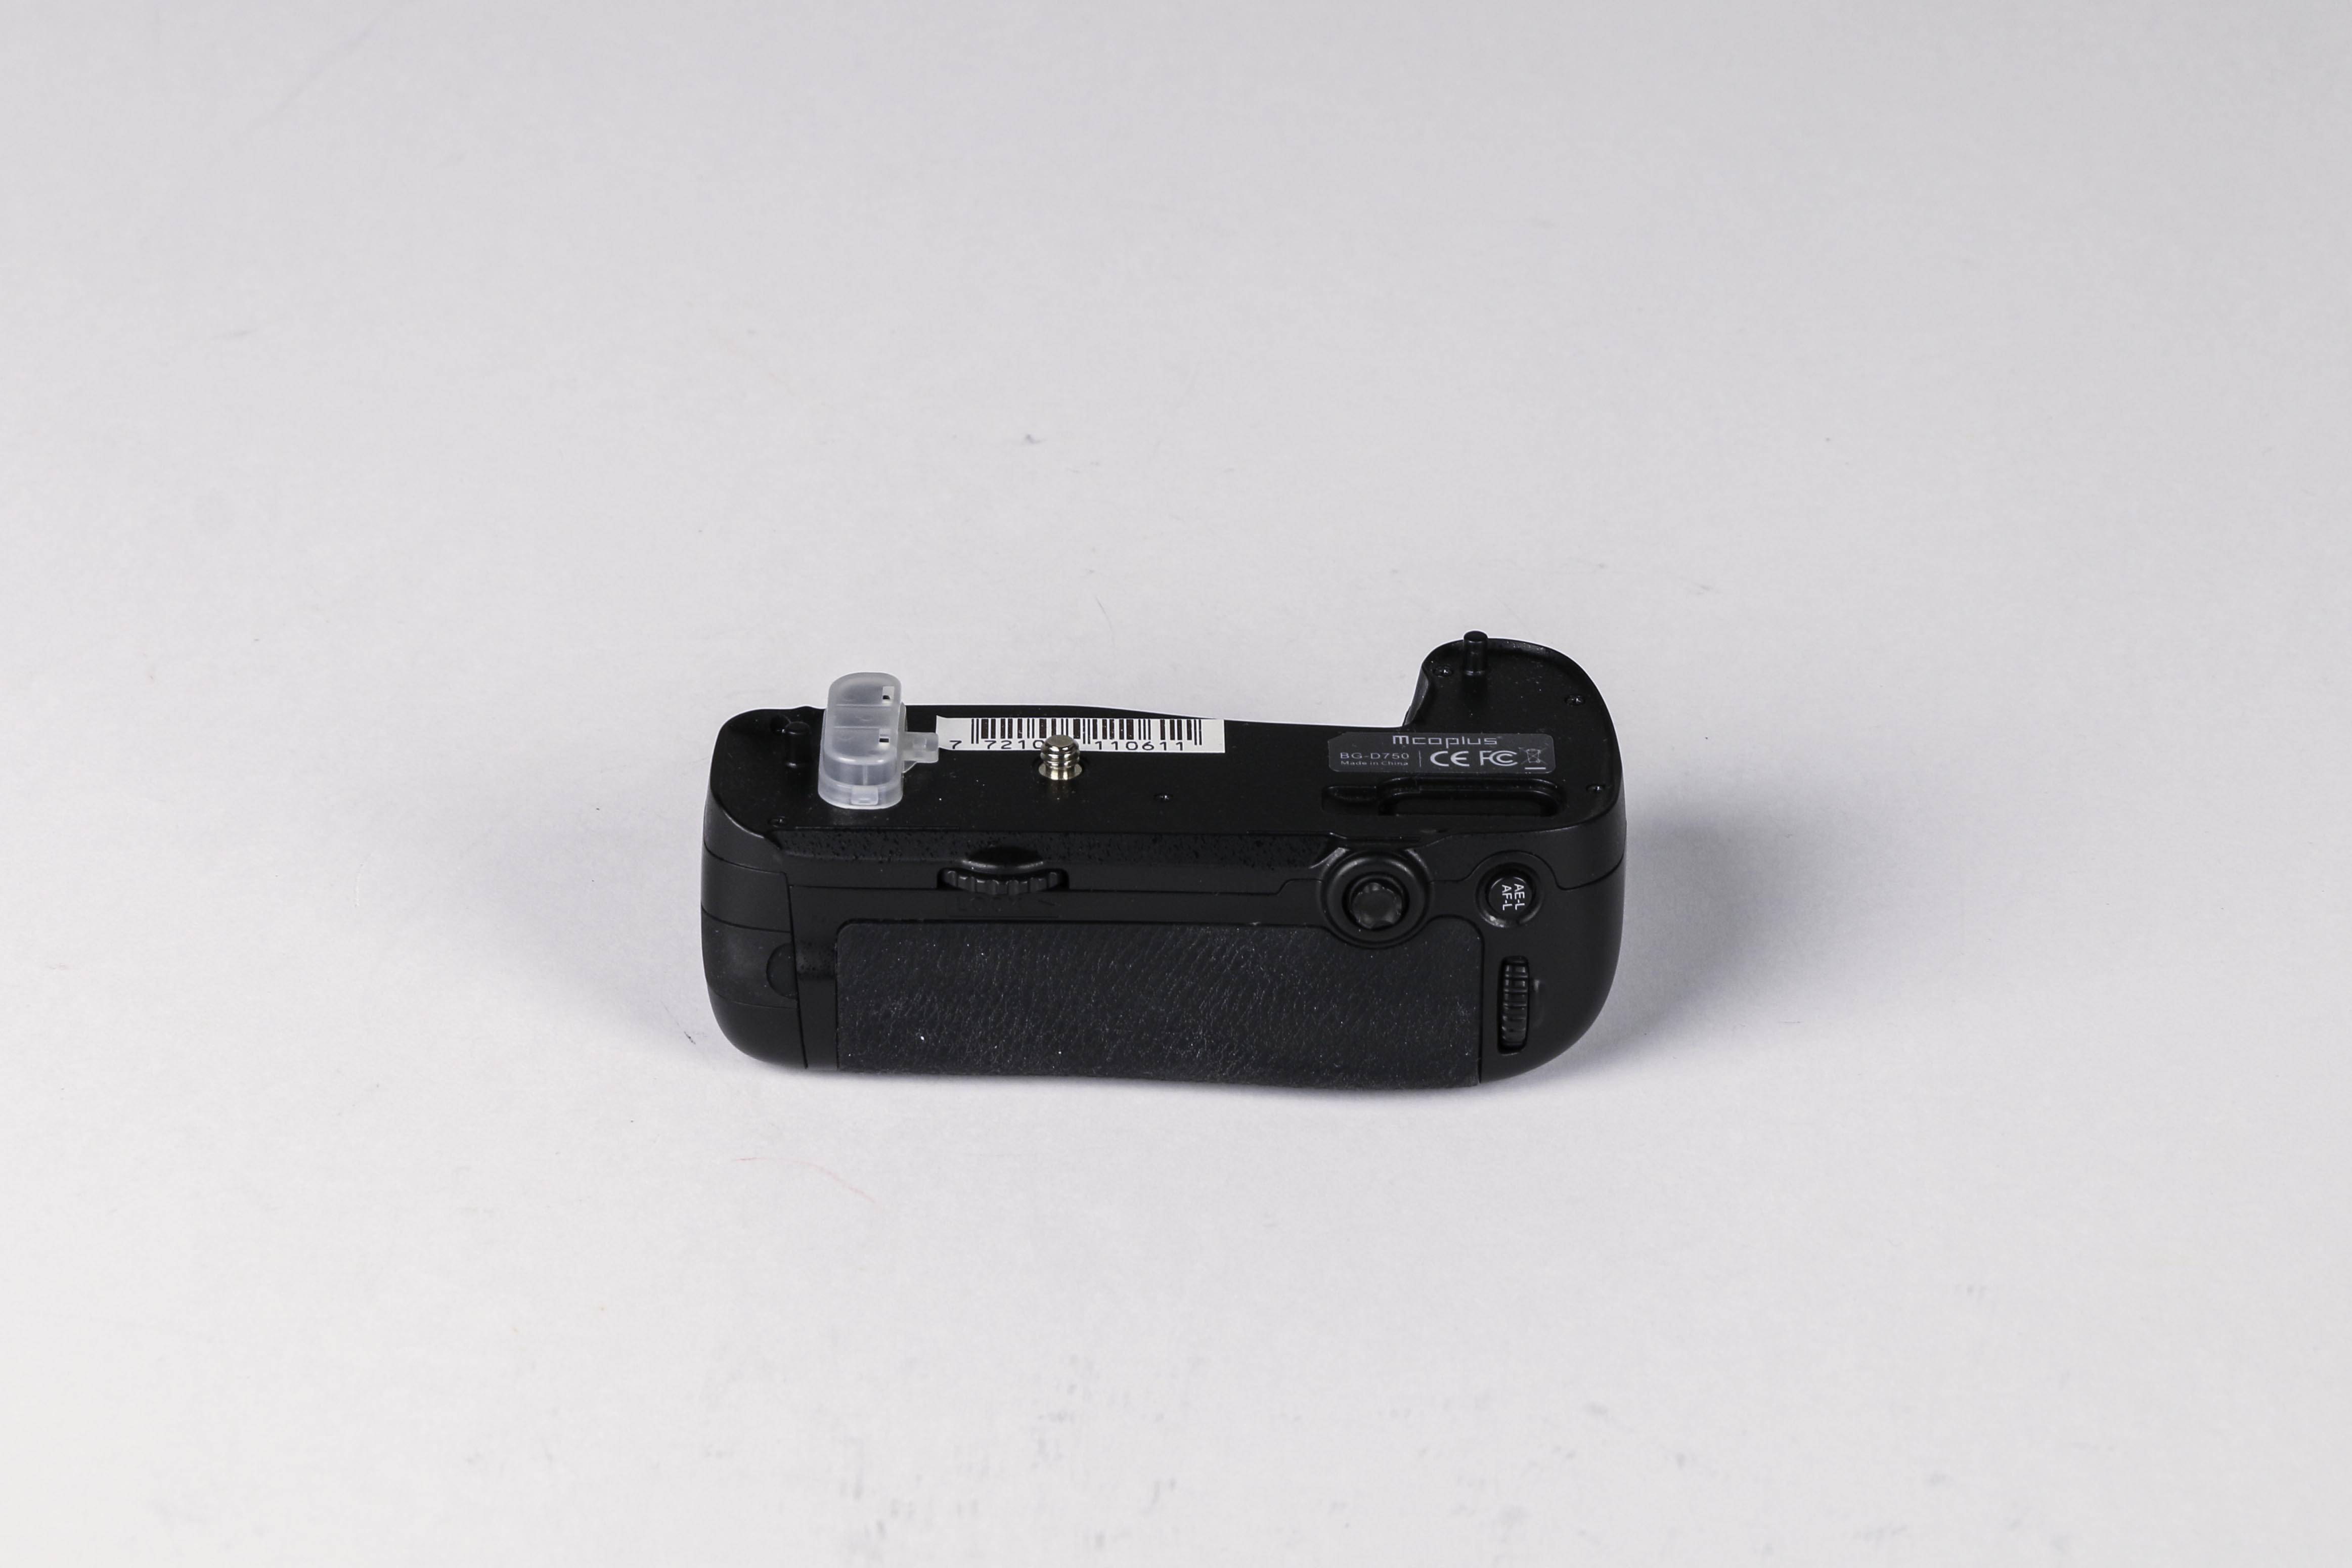 Mcoplus Batteriegriff für Nikon D750 gebraucht Bild 02